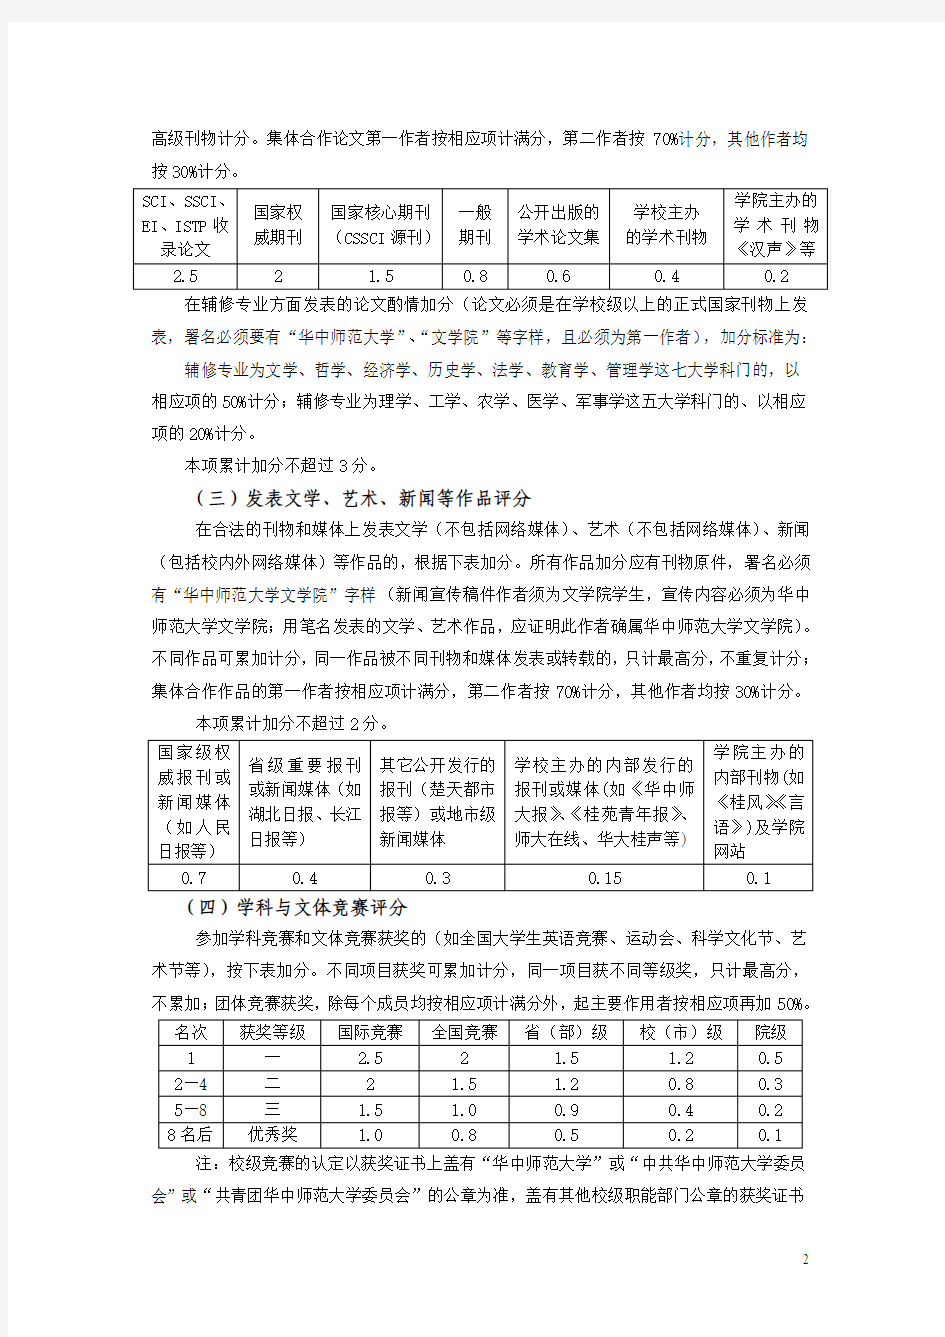 华中师范大学汉语言文学专业2010级奖学金综合测评细则